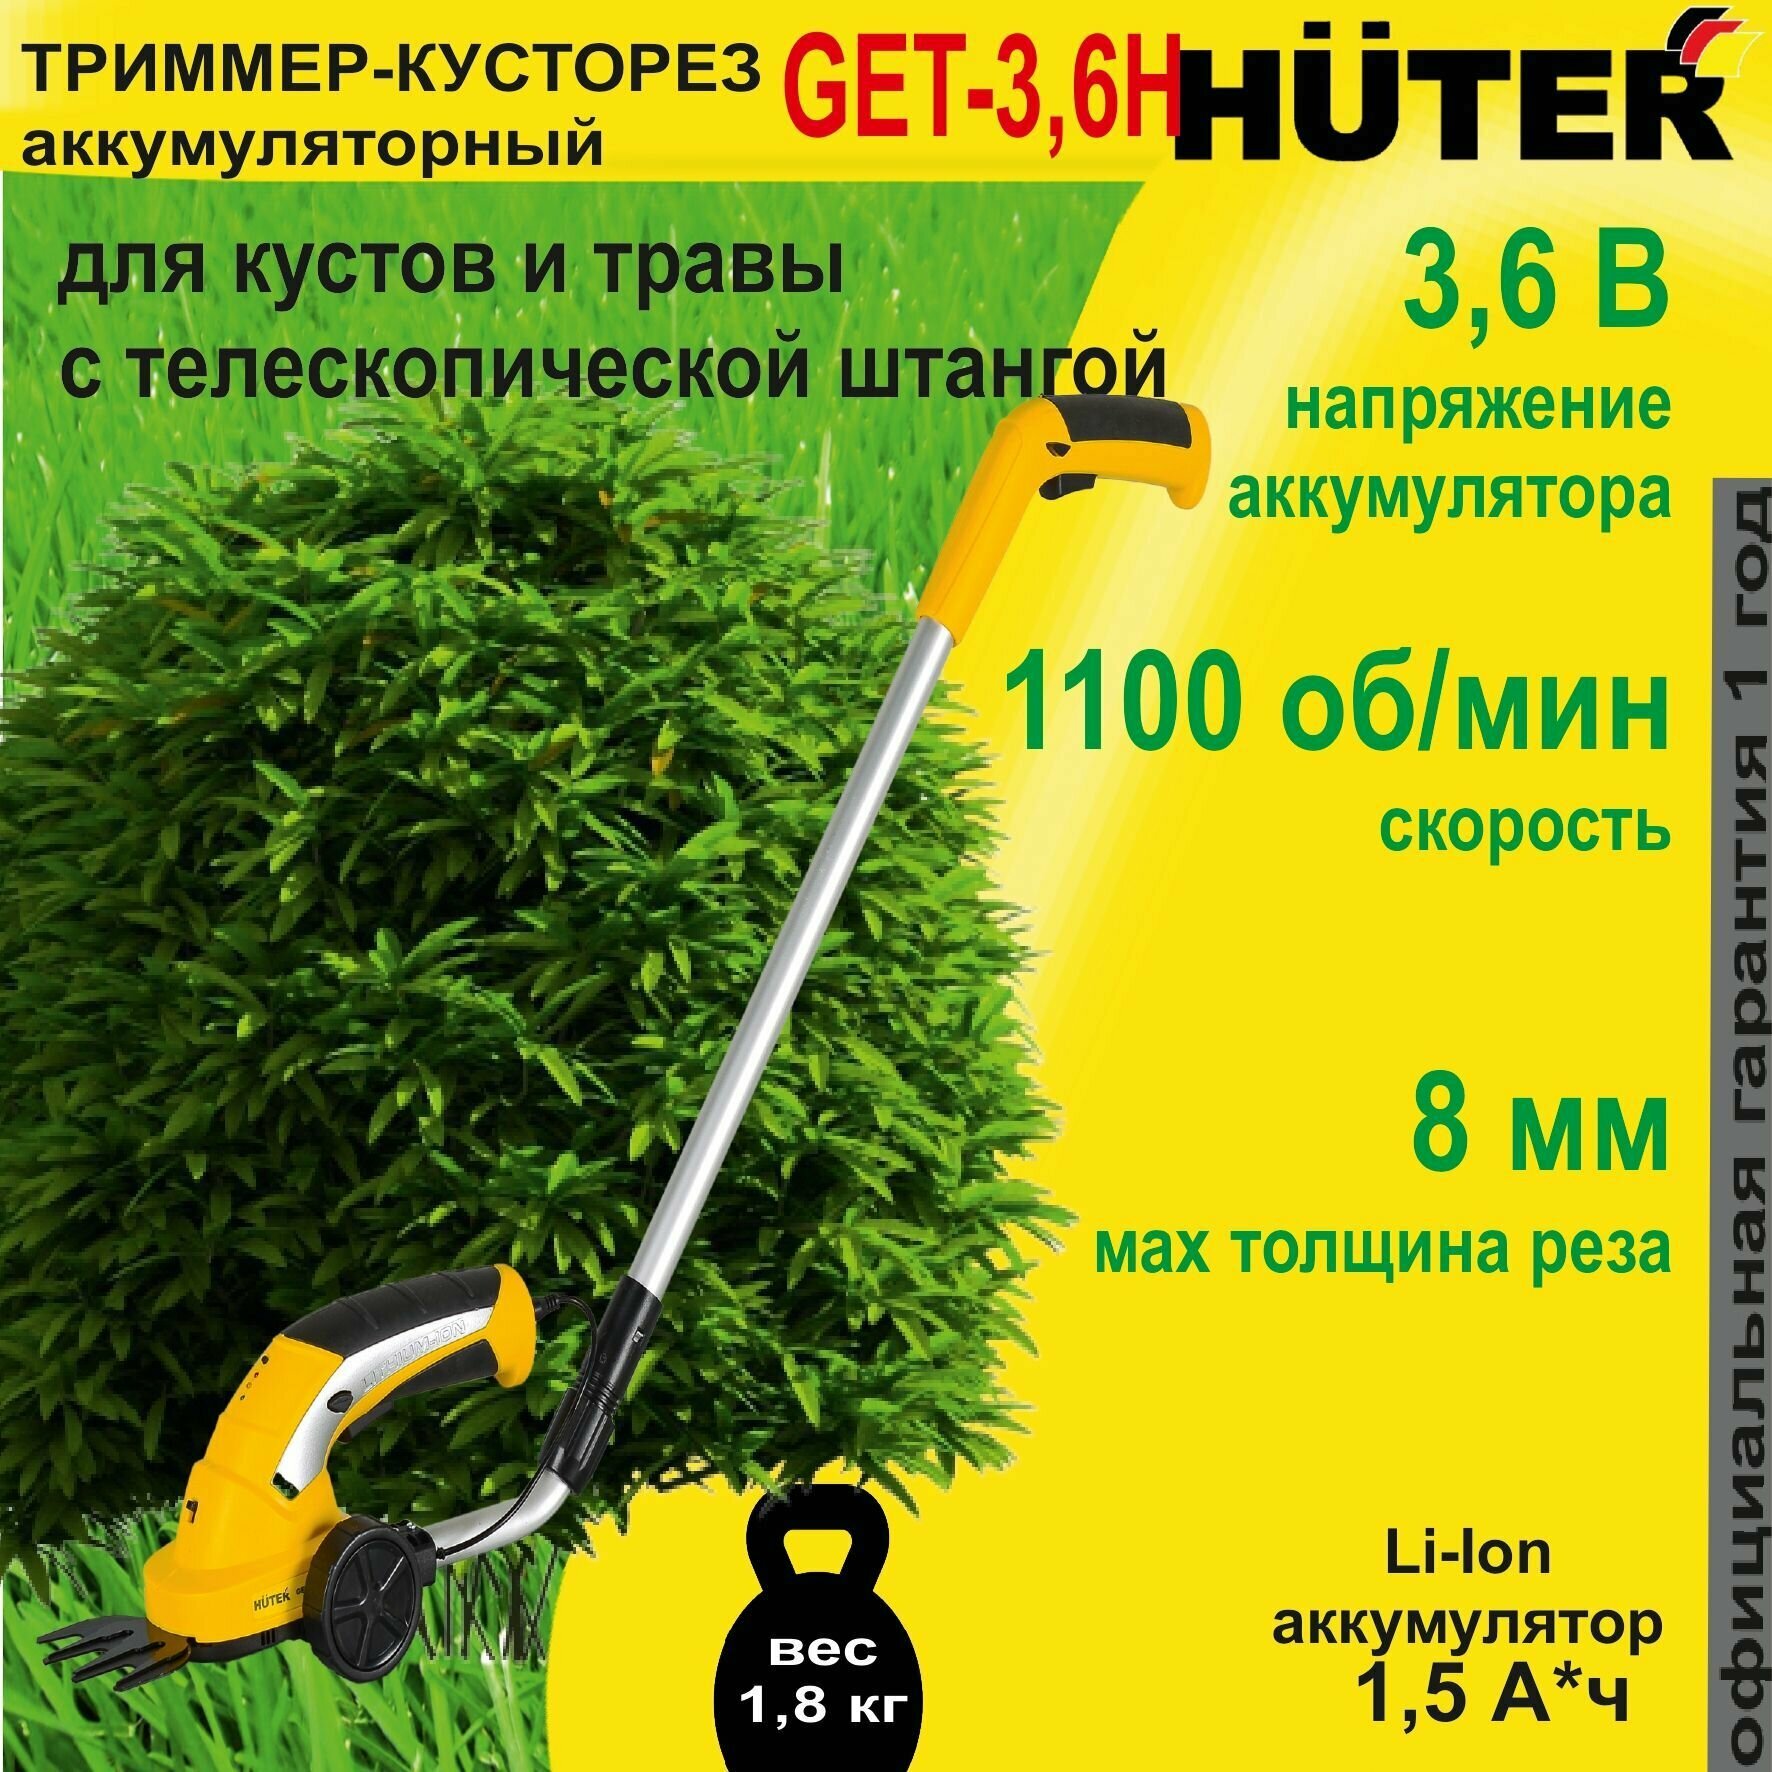 Триммер-кусторез аккумуляторный Huter GET-3,6H - фотография № 12